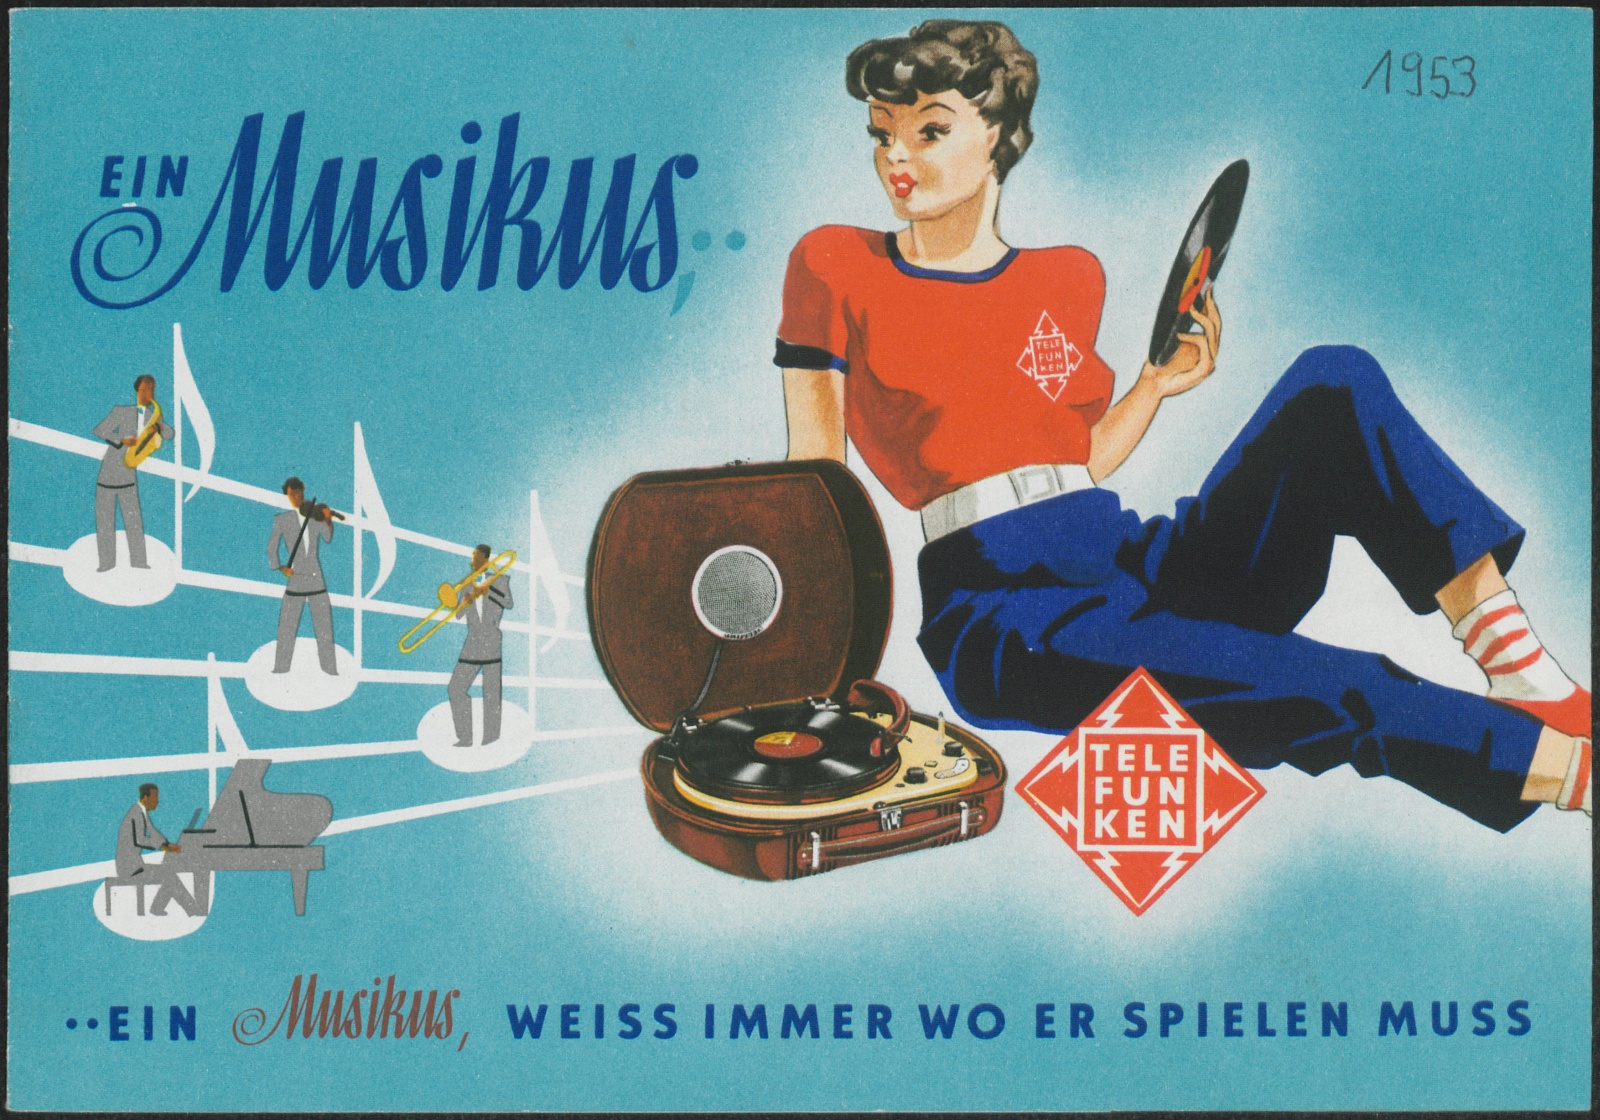 Werbeprospekt: Ein Musikus, ein Musikus, weiss immer wo er spielen muss (Stiftung Deutsches Technikmuseum Berlin CC0)